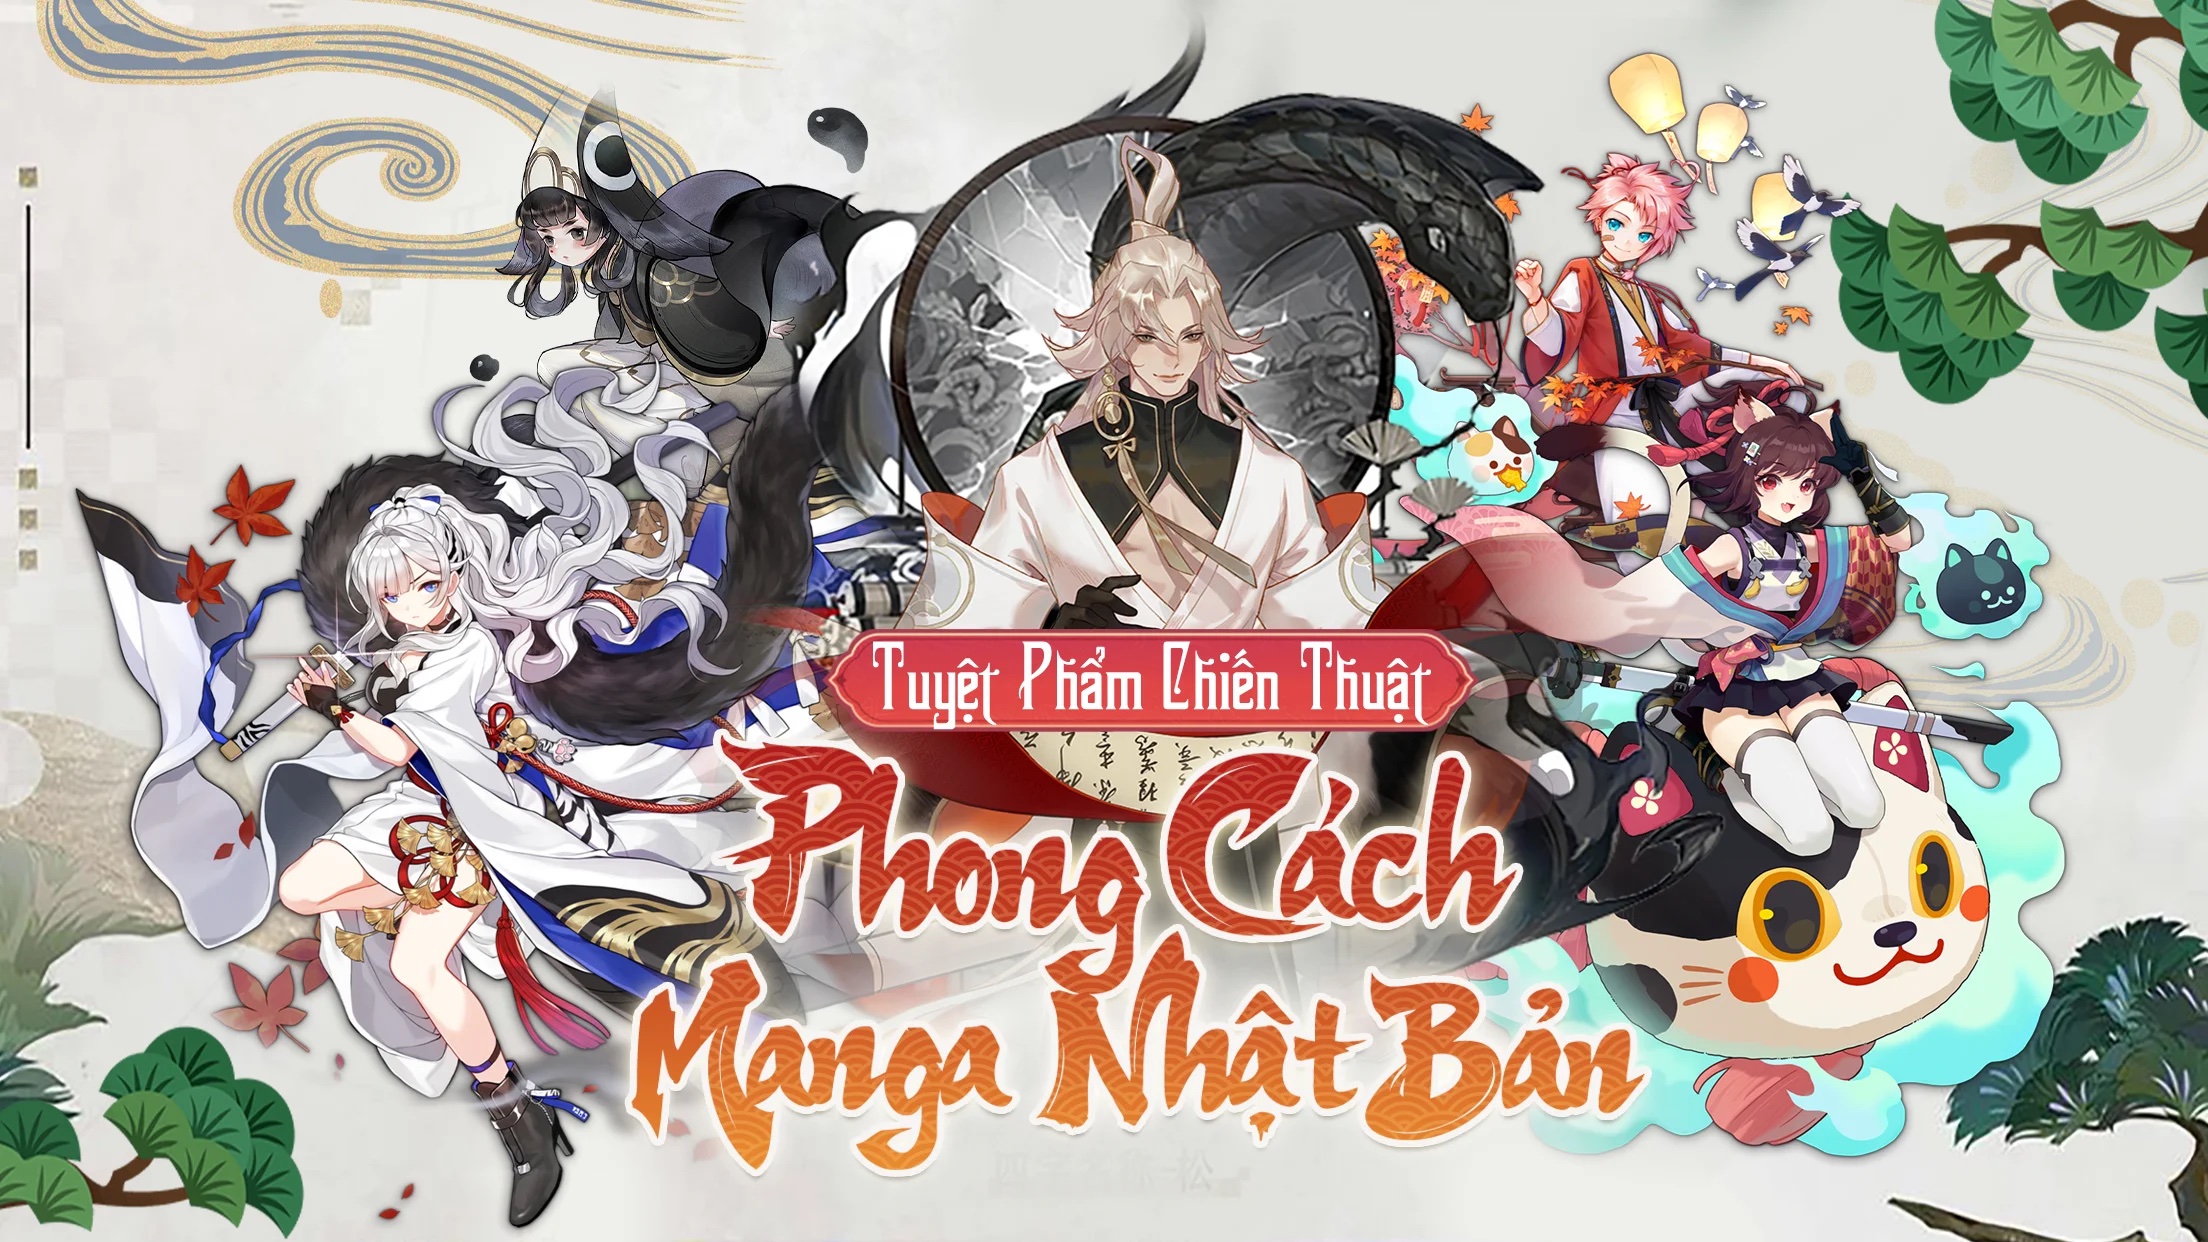 Âm Dương Truyện: Game mobile thần thoại Nhật Bản ấn định ra mắt